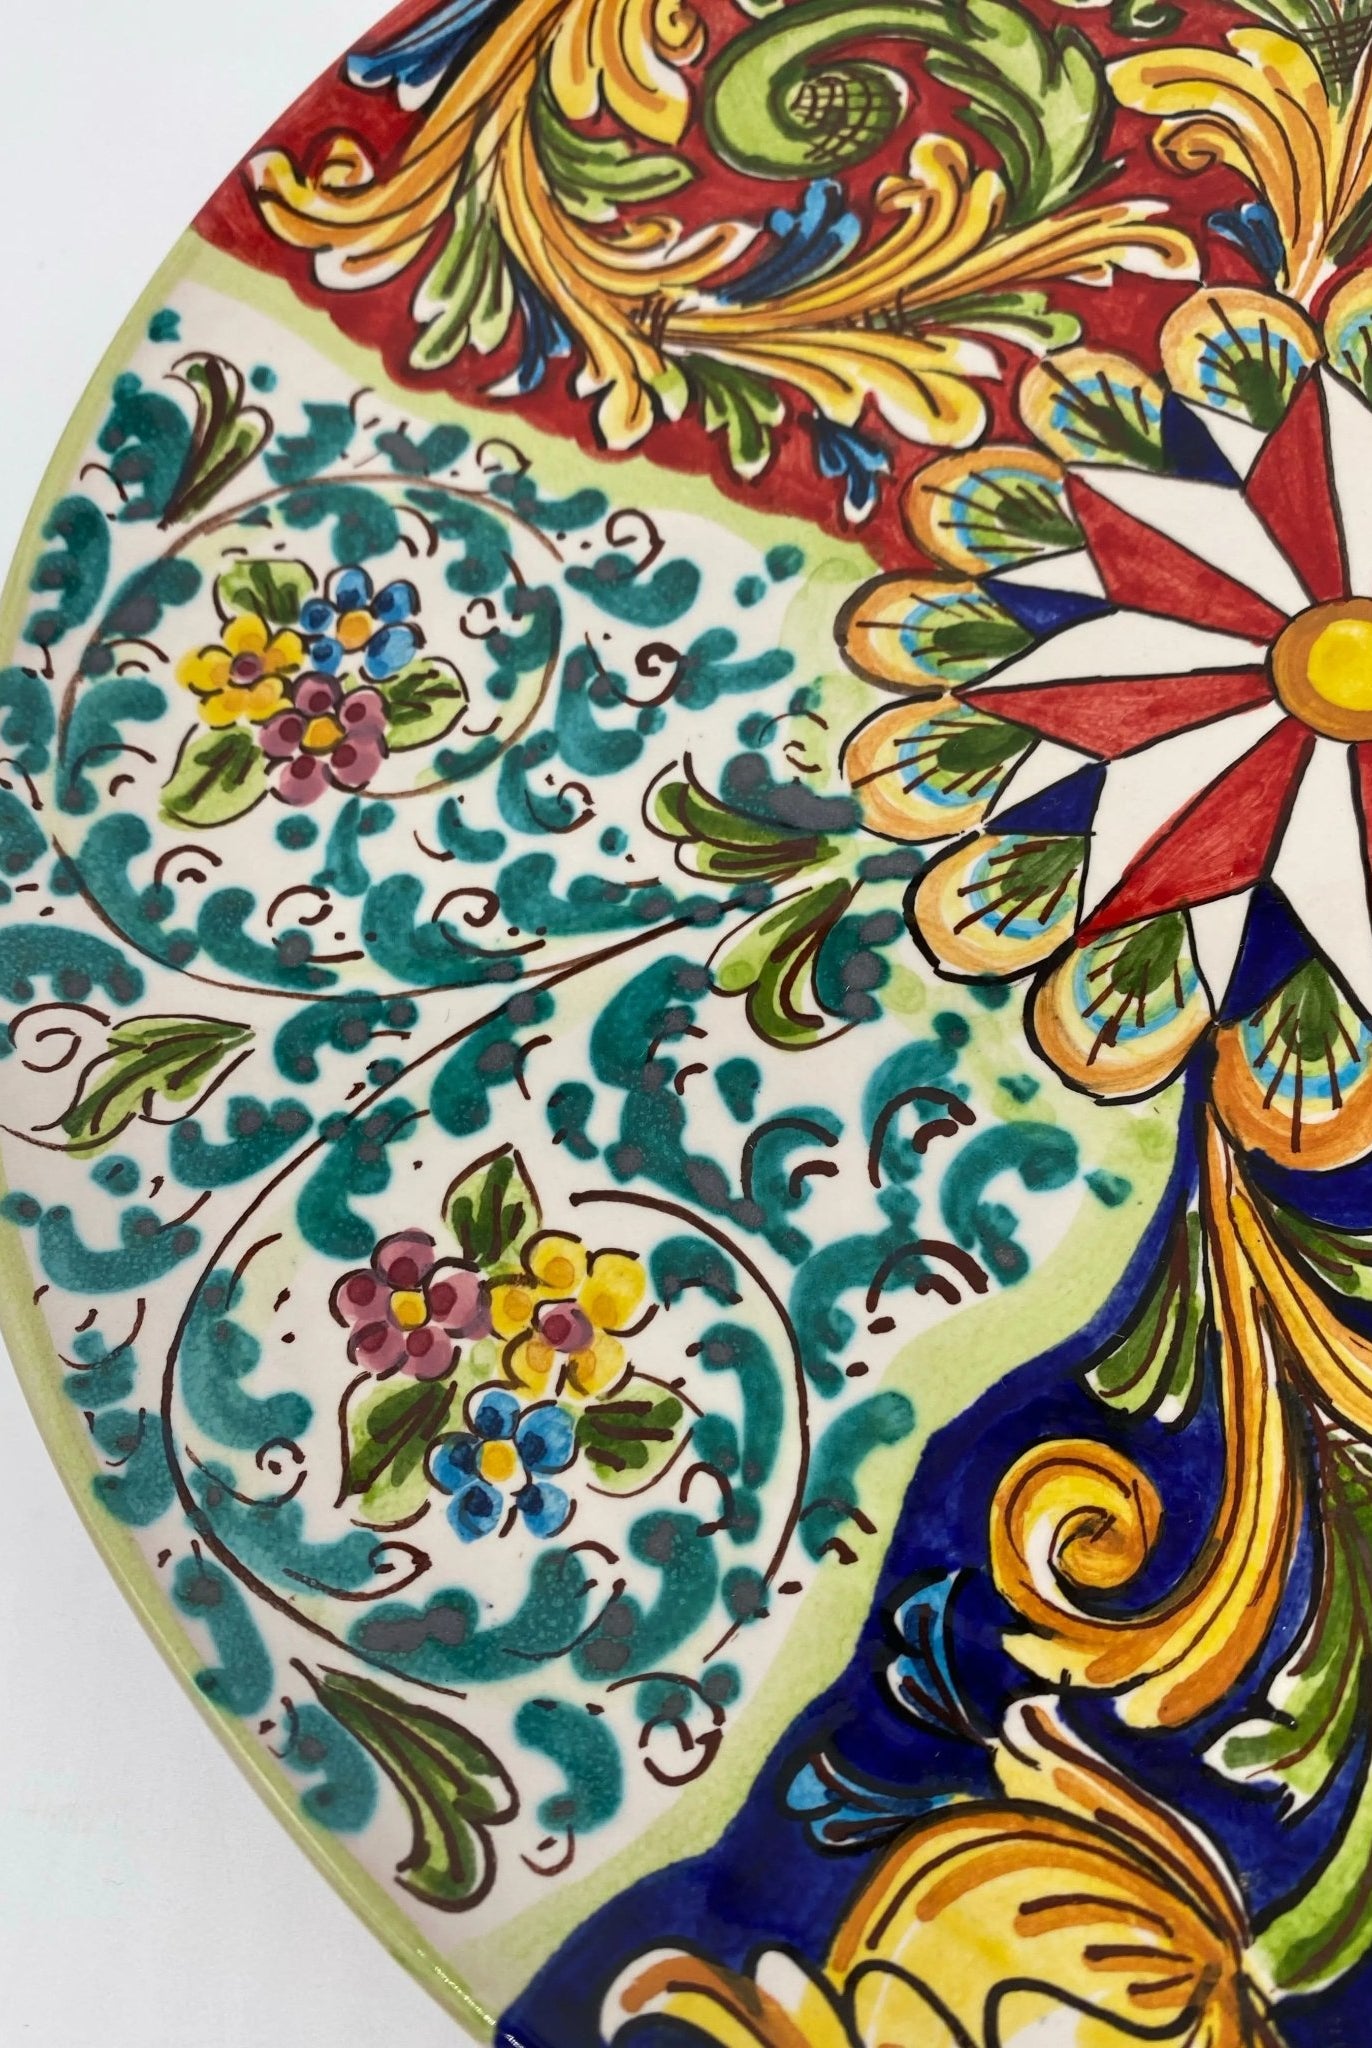 12 piatti da parete, piatti decorativi dipinti a mano, piatto da